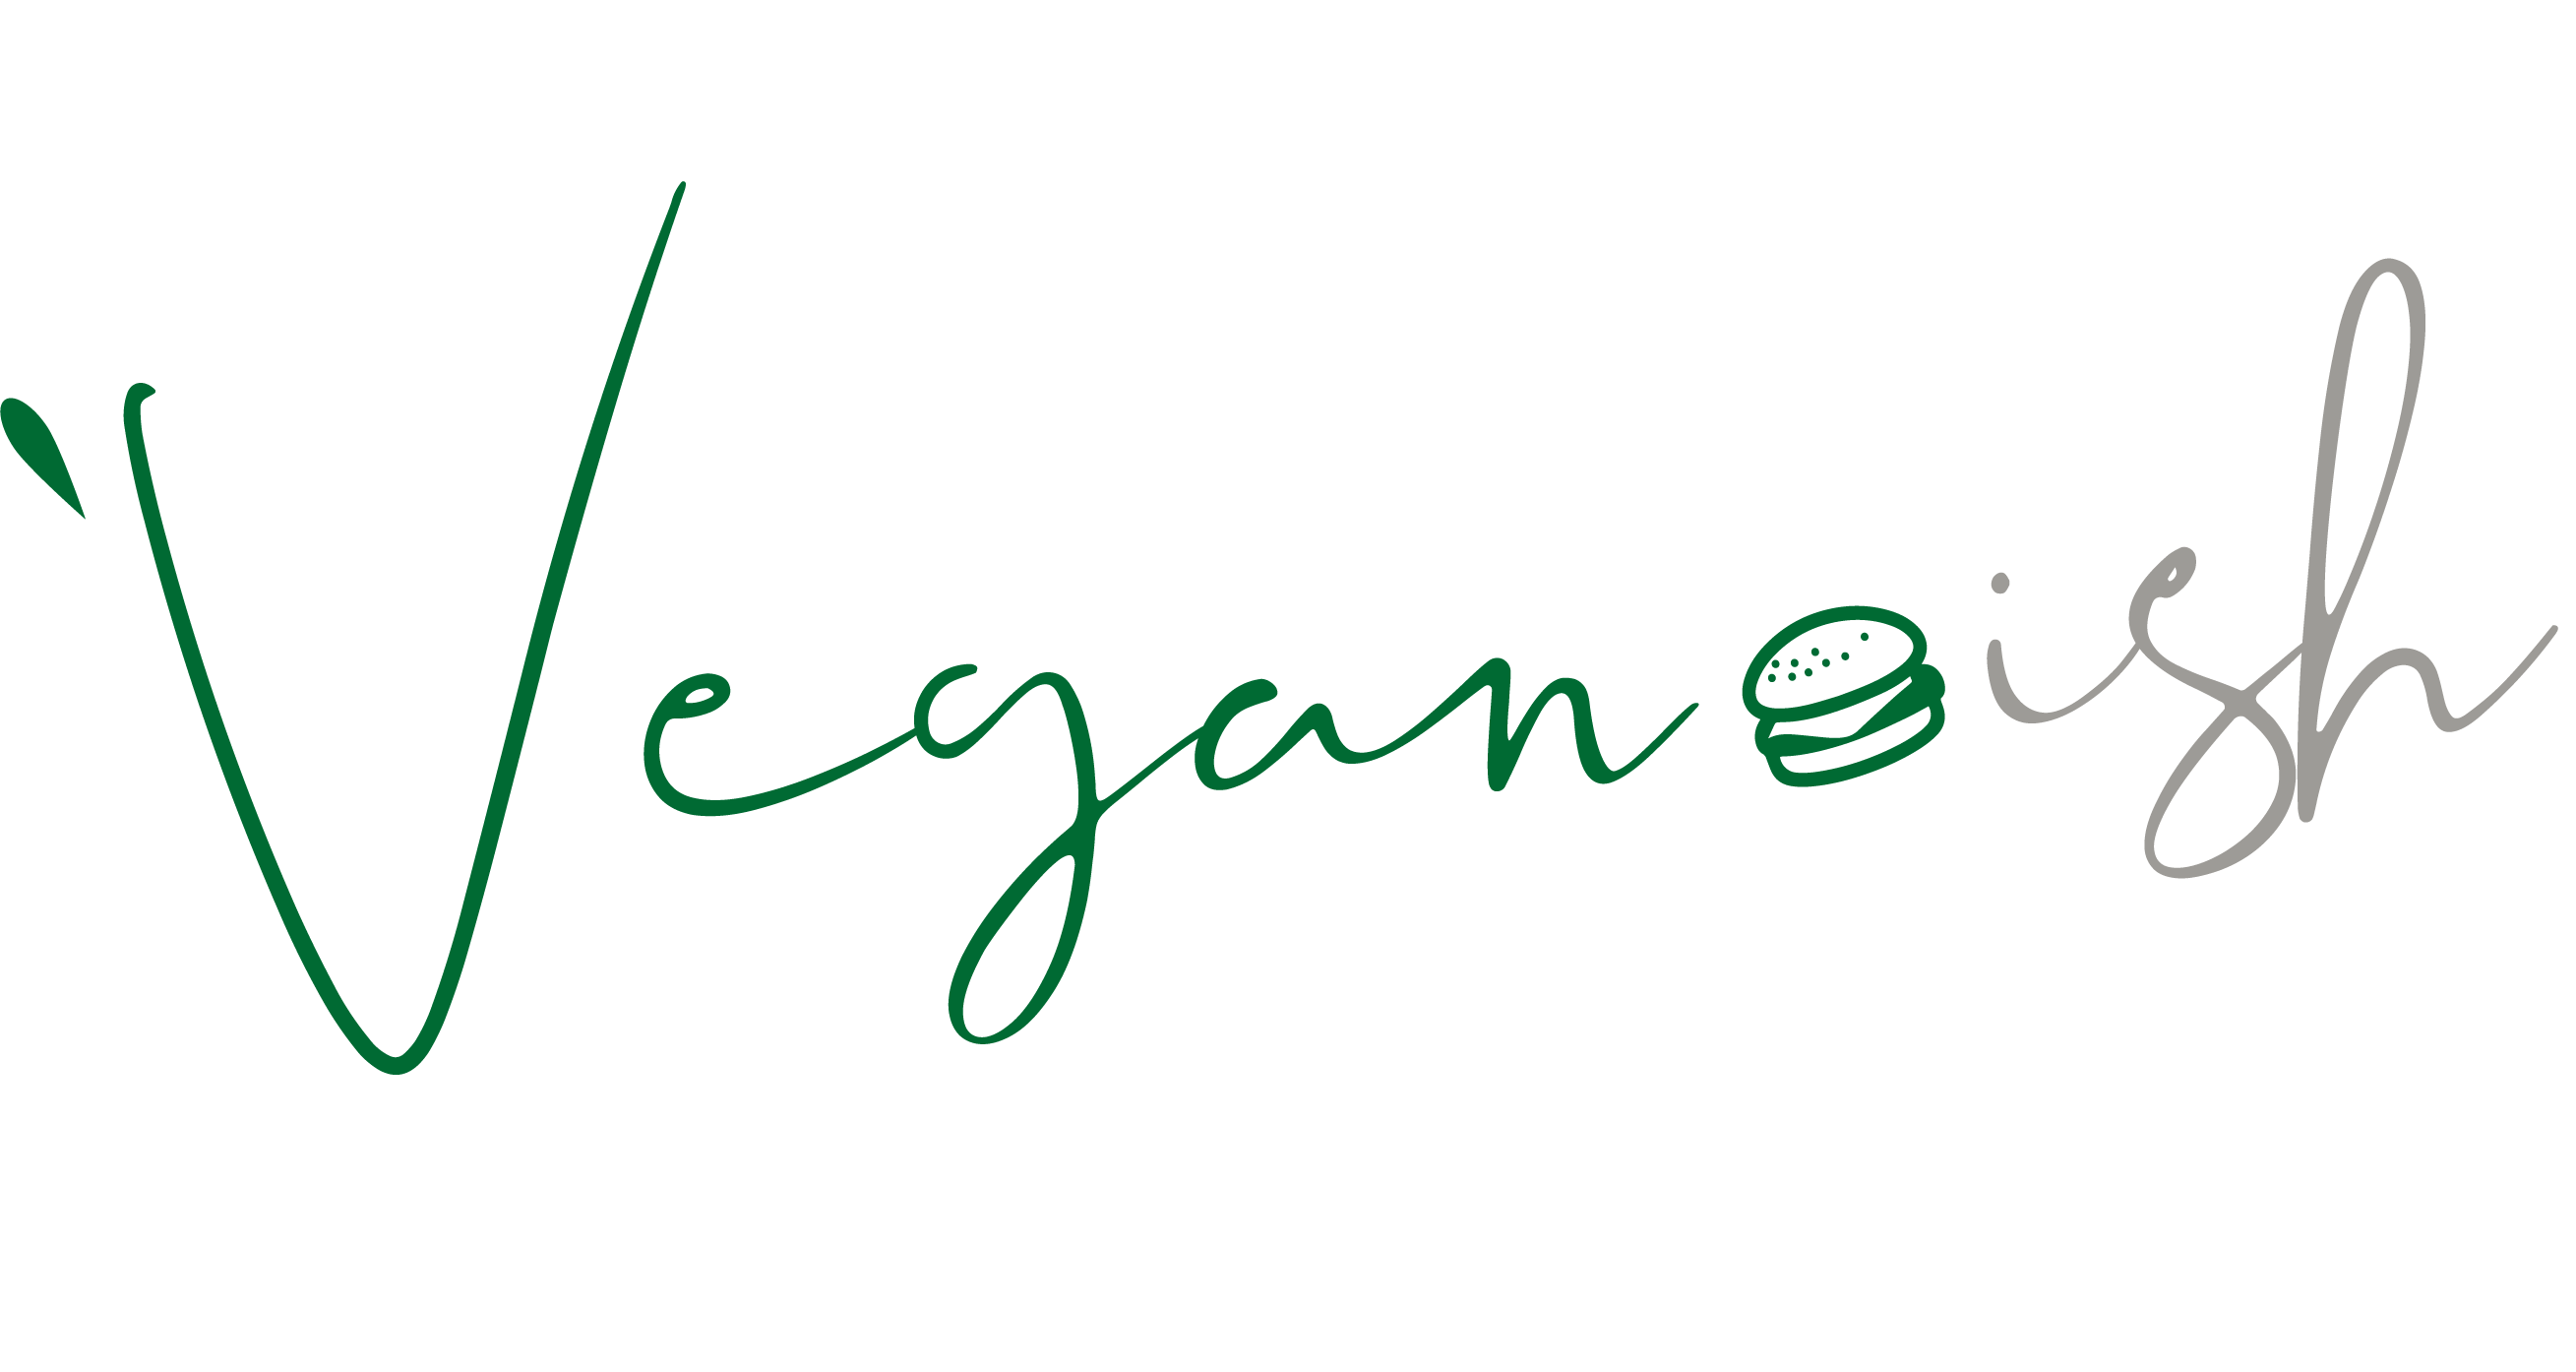 veganish